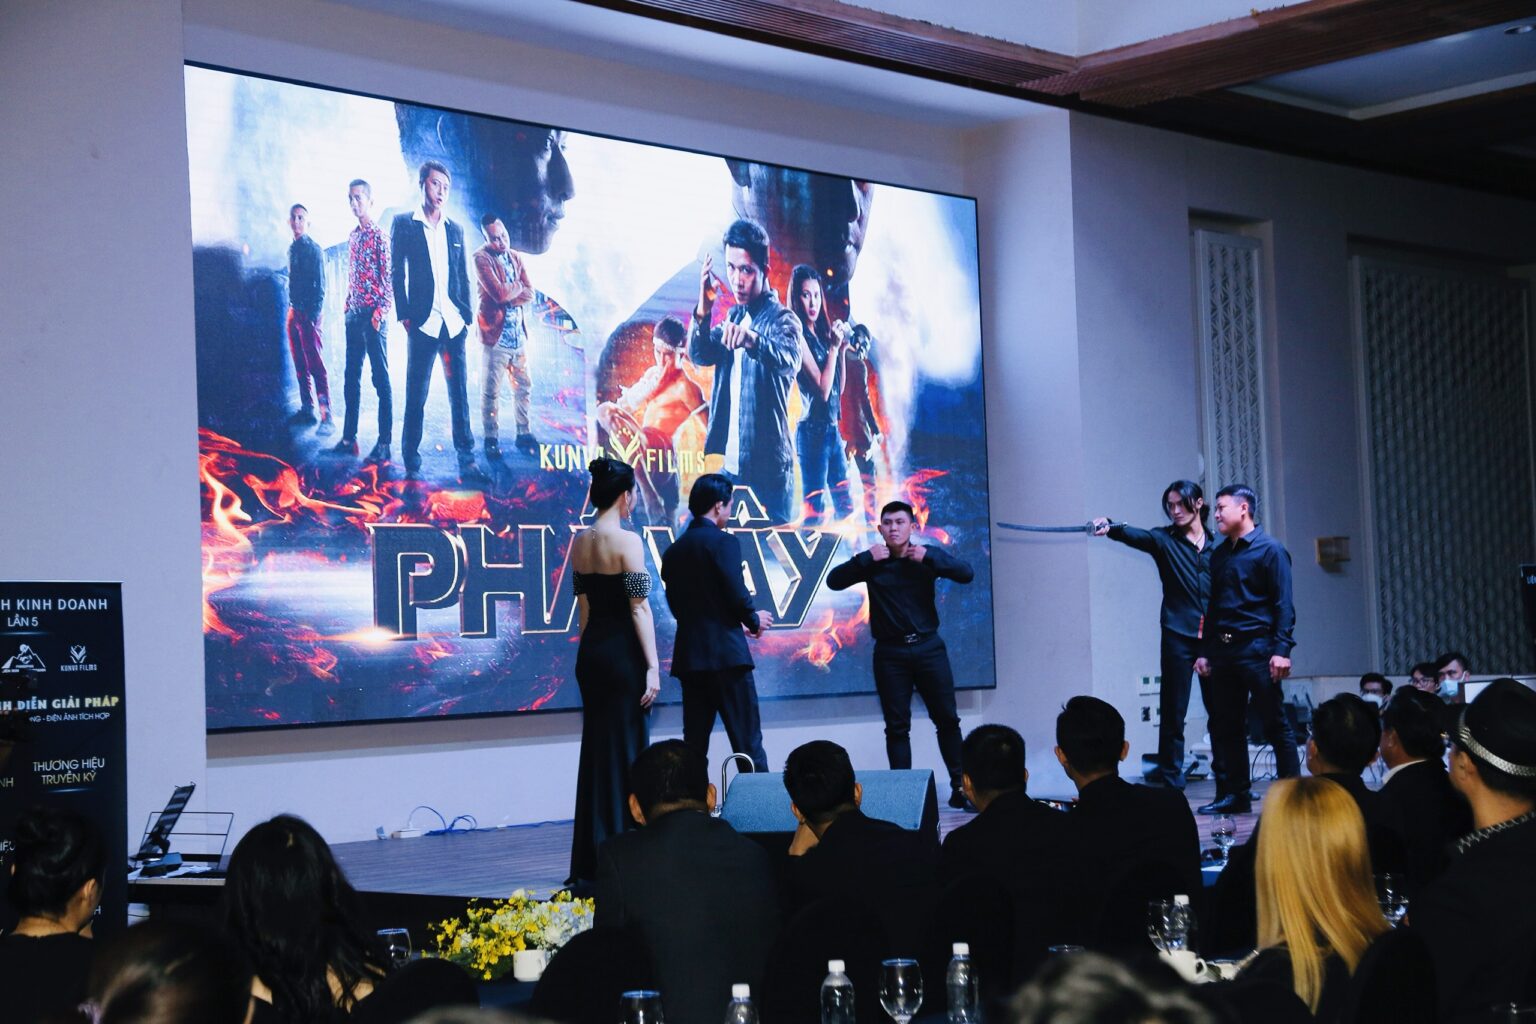 Kunva Films giới thiệu series phim điện ảnh "Phá Vây: Bản Lĩnh Thép" đến các doanh nghiệp tại Liên Minh Kinh Doanh lần 5.